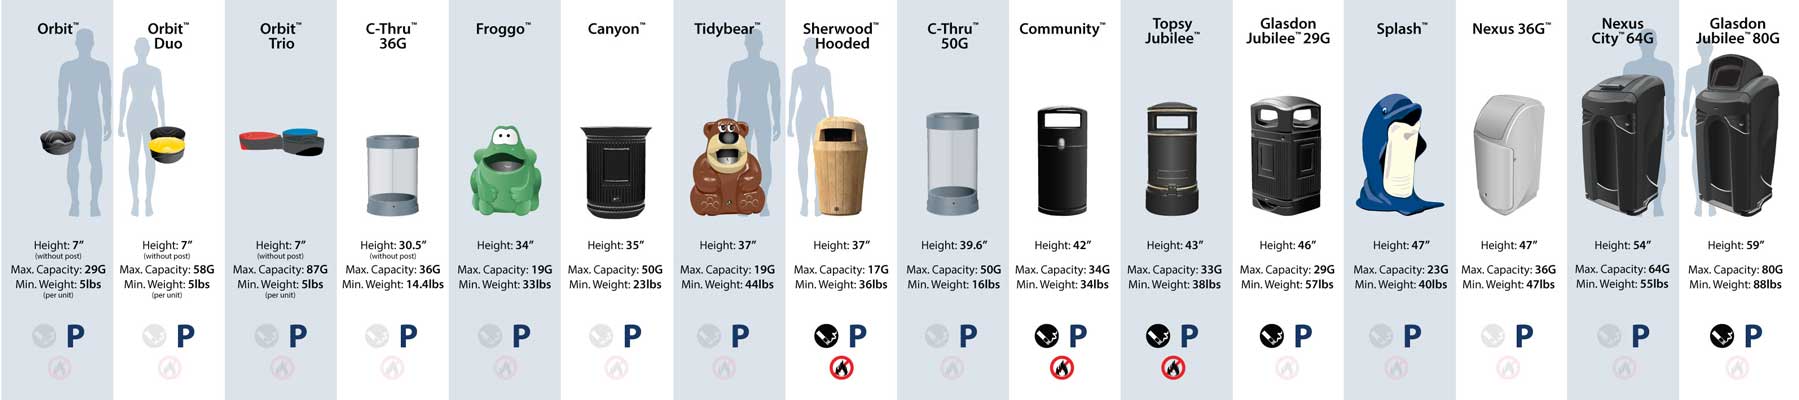 Trash cans product size comparison